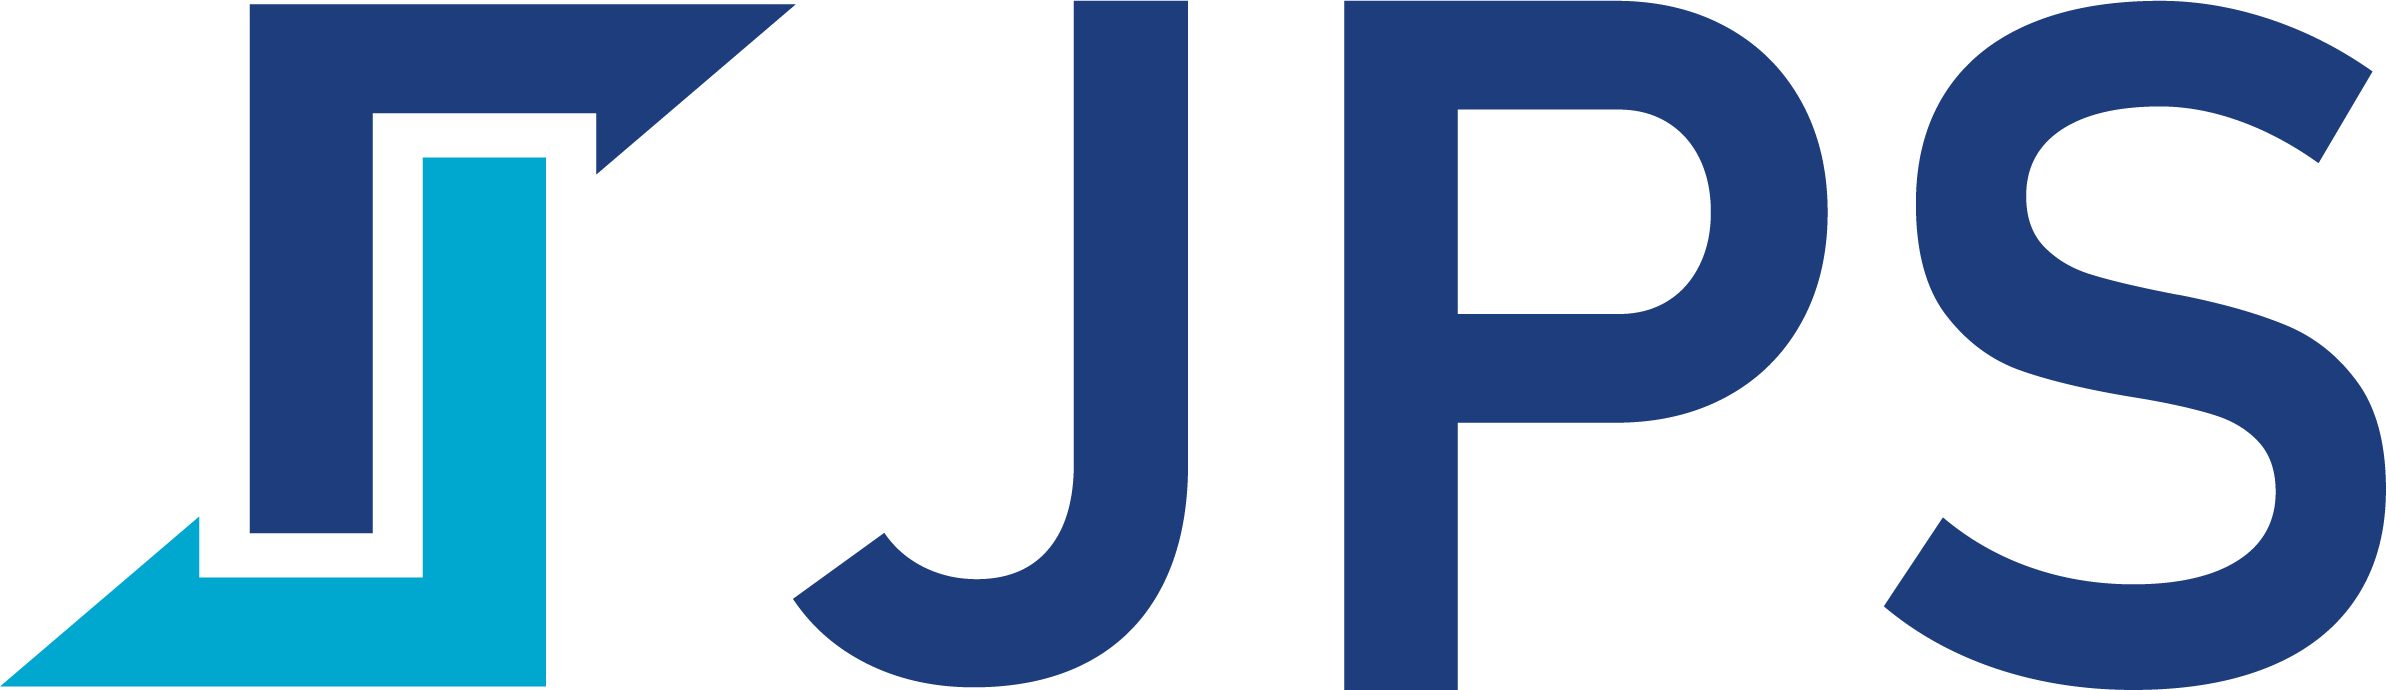 Jps Logo PNG Vectors Free Download